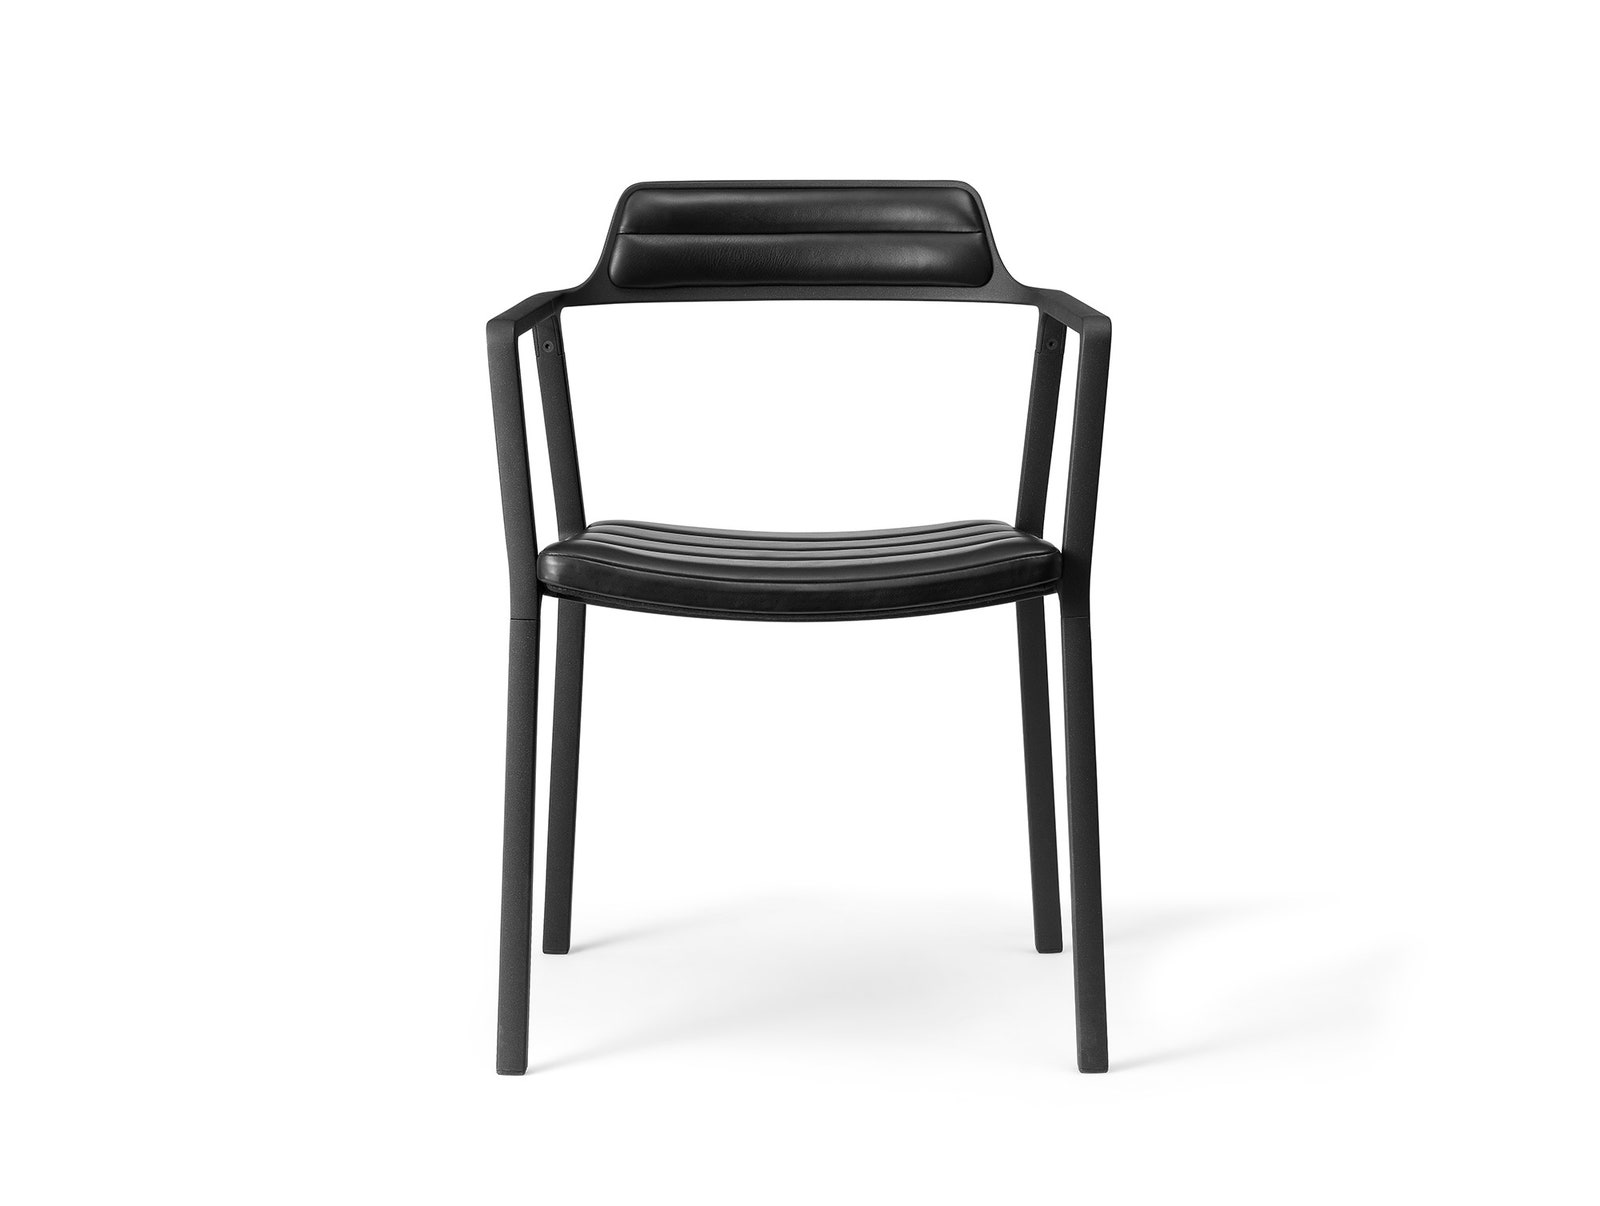 Дизайн лаконичного кресла от Vipp